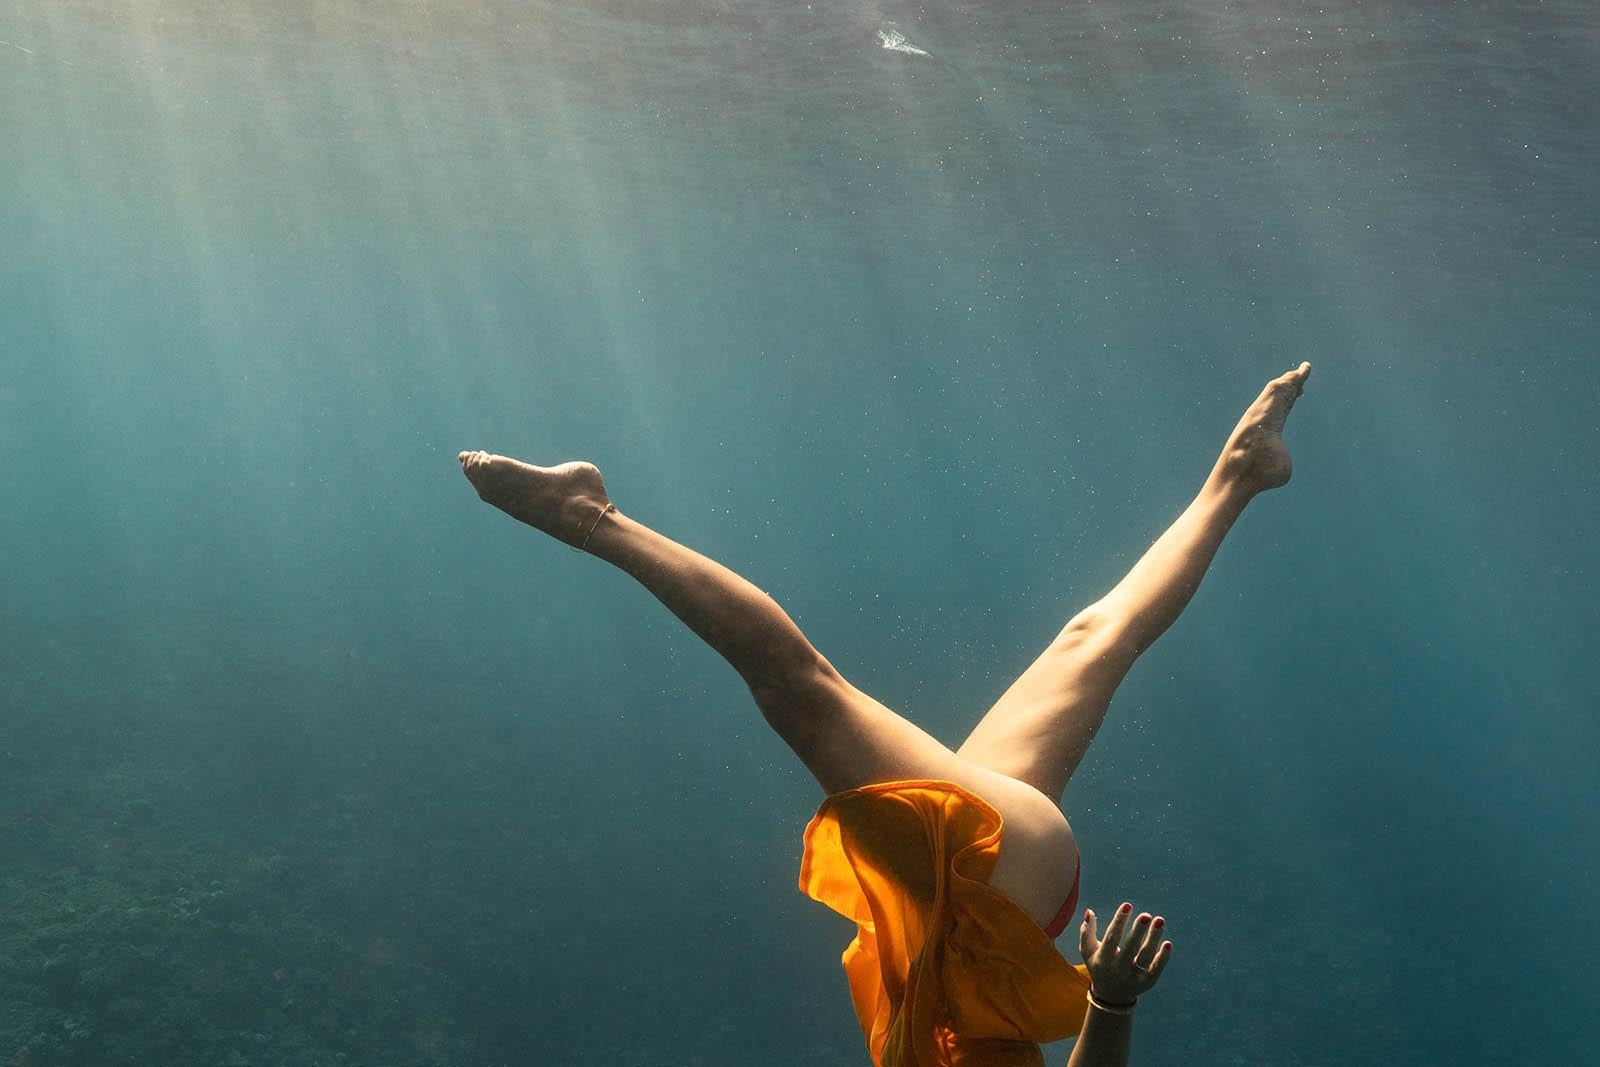 Grande photo en couleur « Synchronised swimming in the Blue » (Plonger dans le bleu) - Impression d'art - Contemporain Photograph par Olivier Borde